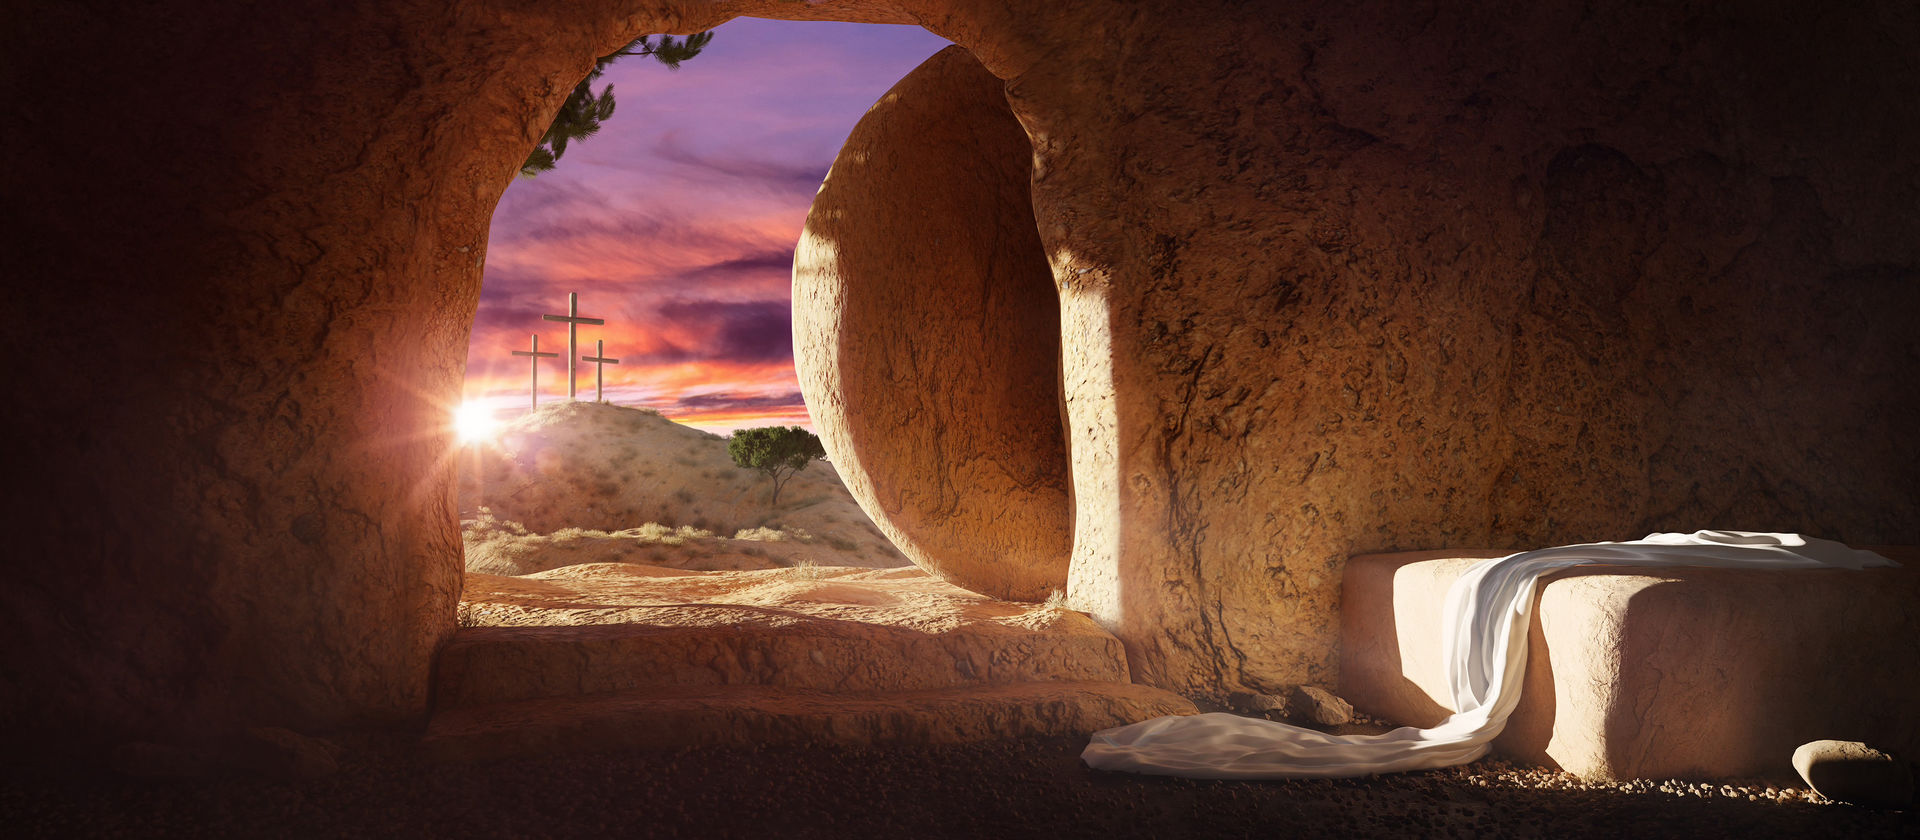 Поздравляем с праздником Христова воскресения!